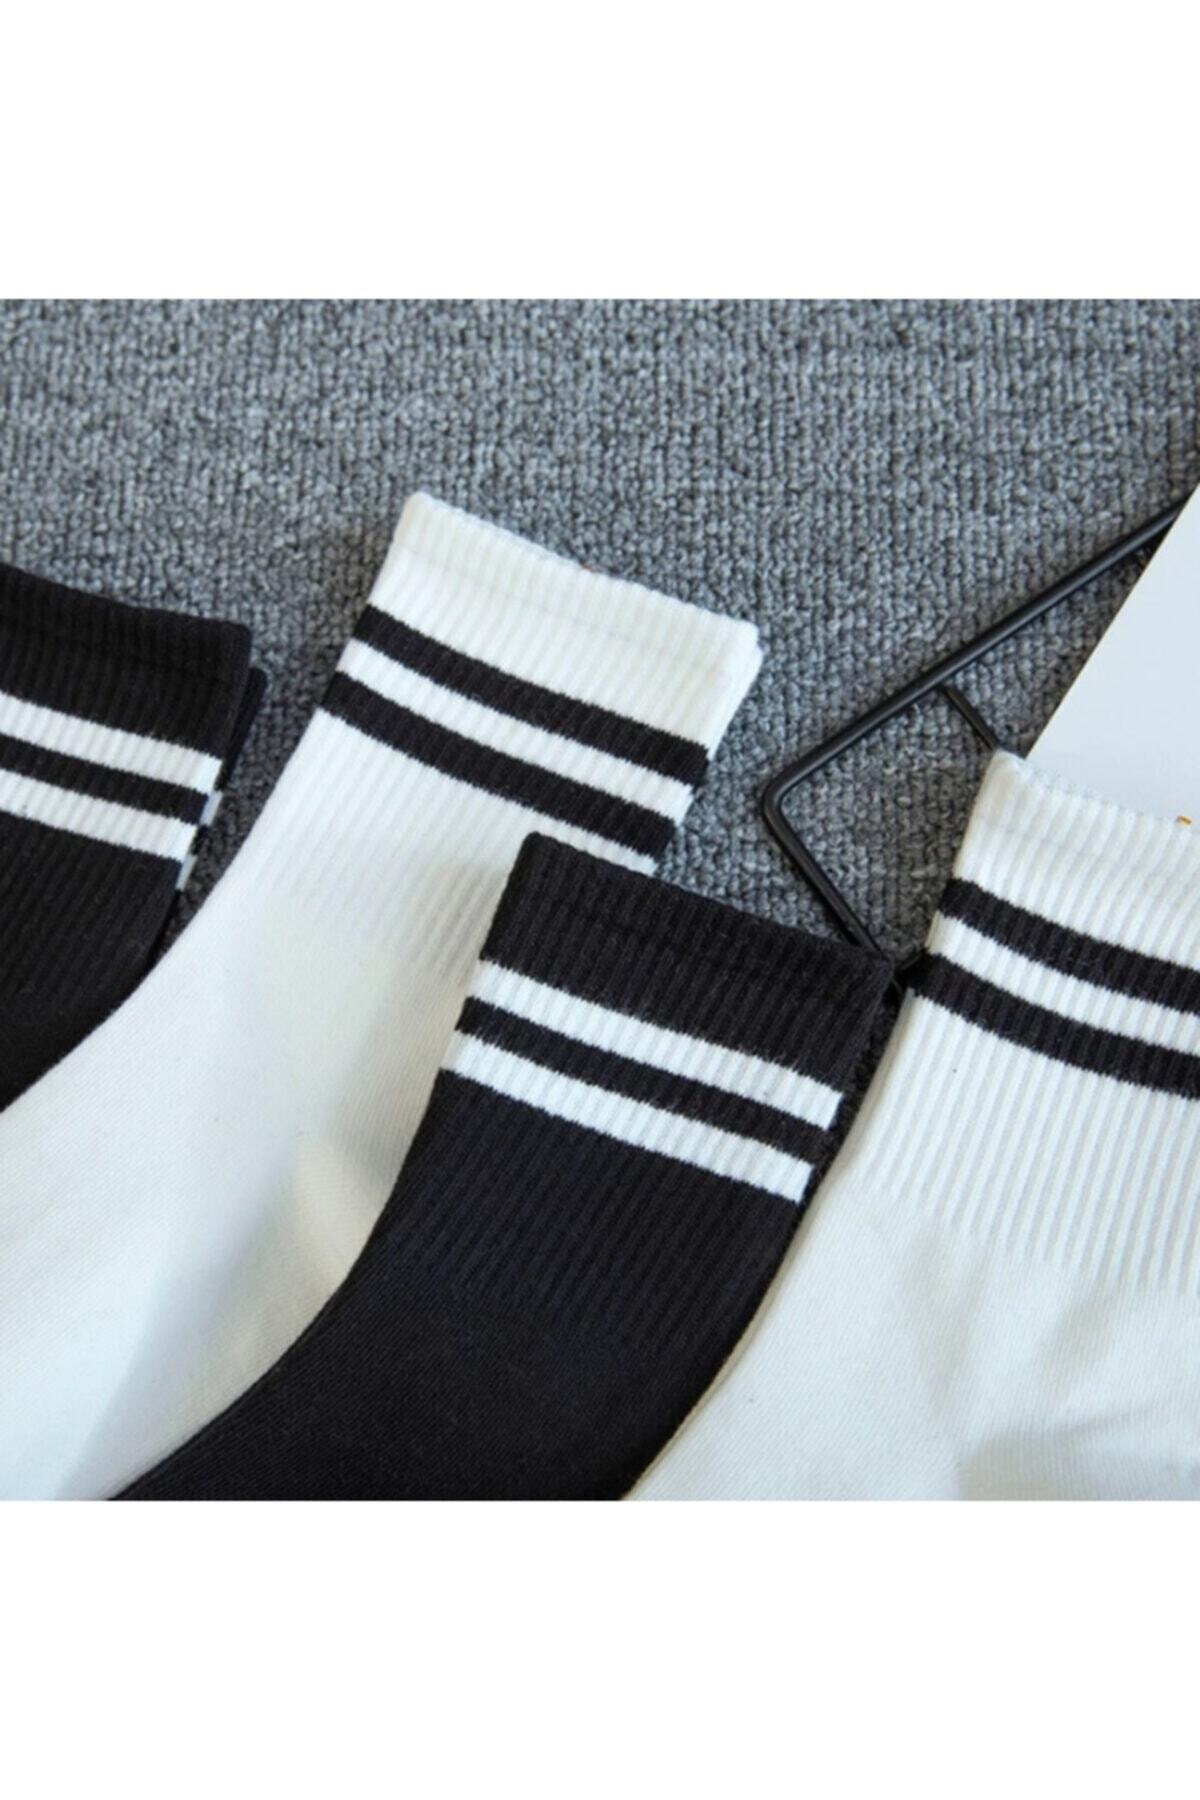 Peri Çorap 2'li Siyah Ve Beyaz Çizgili Tenis Çorap